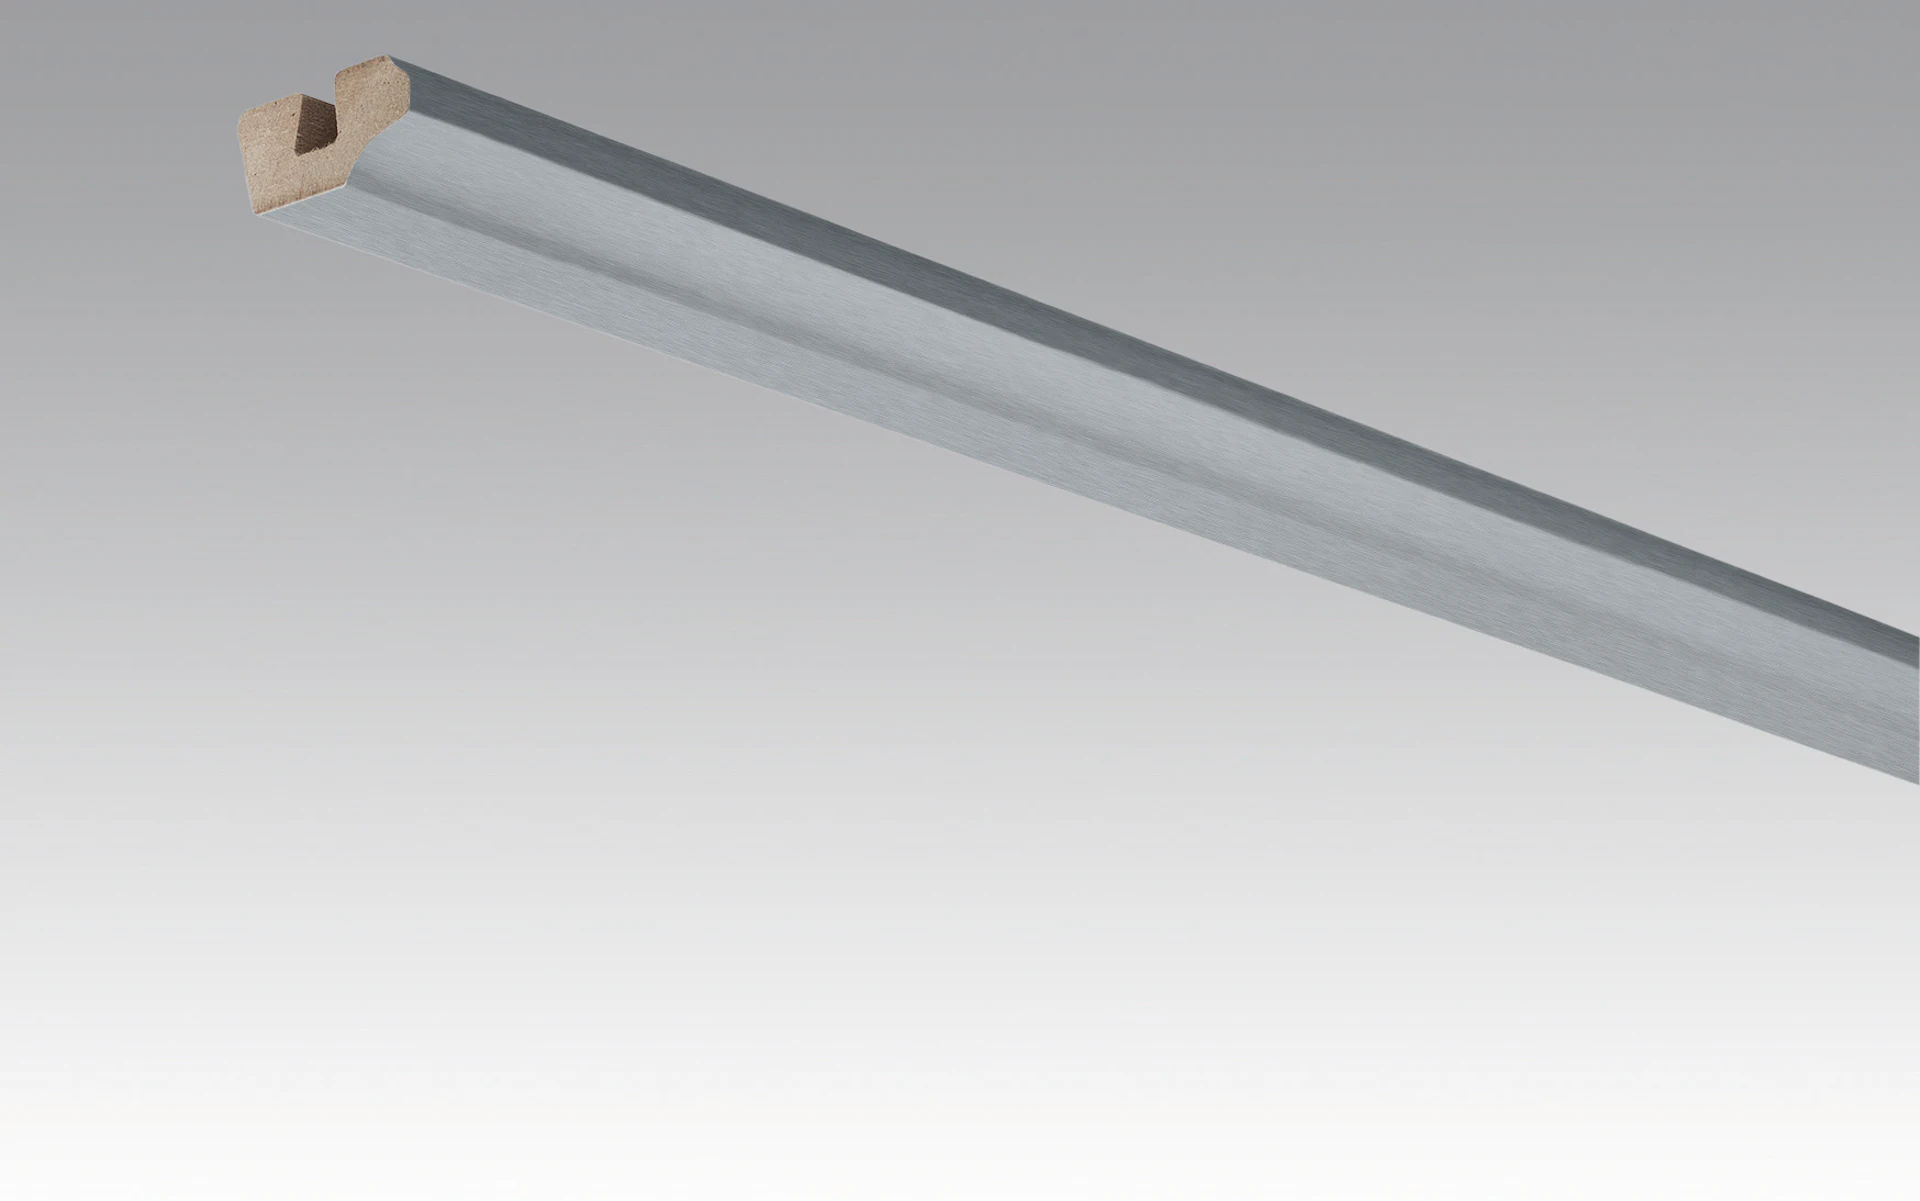 Battiscopa MEISTER battiscopa a soffitto in acciaio inox metallico 4079 - 2380 x 38 x 19 mm (200031-2380-04079)